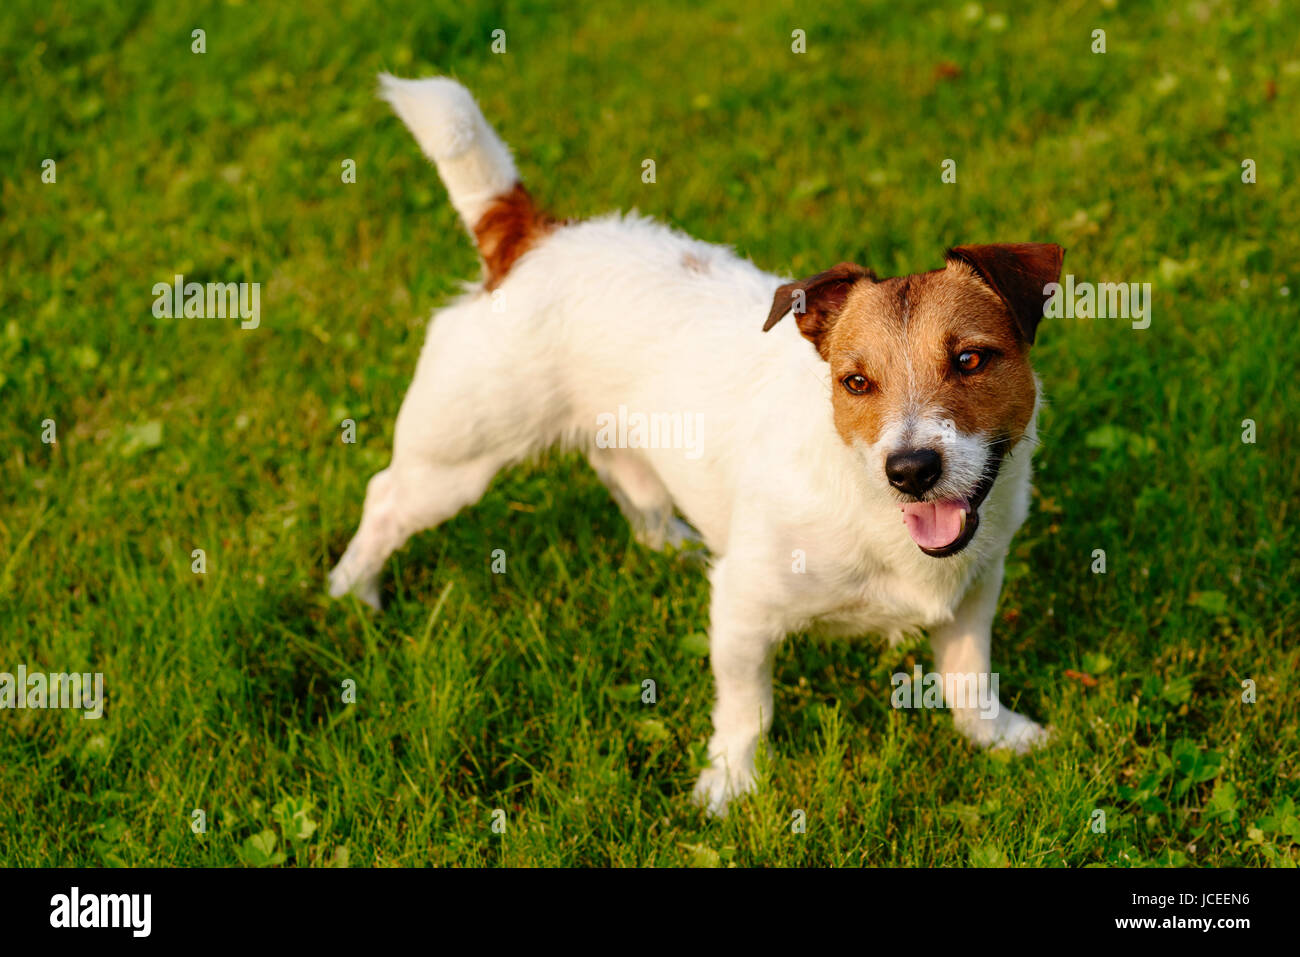 Zufrieden und glücklich Hund mit verspielten Gesichtsausdruck auf grünen Rasen Hintergrund Stockfoto